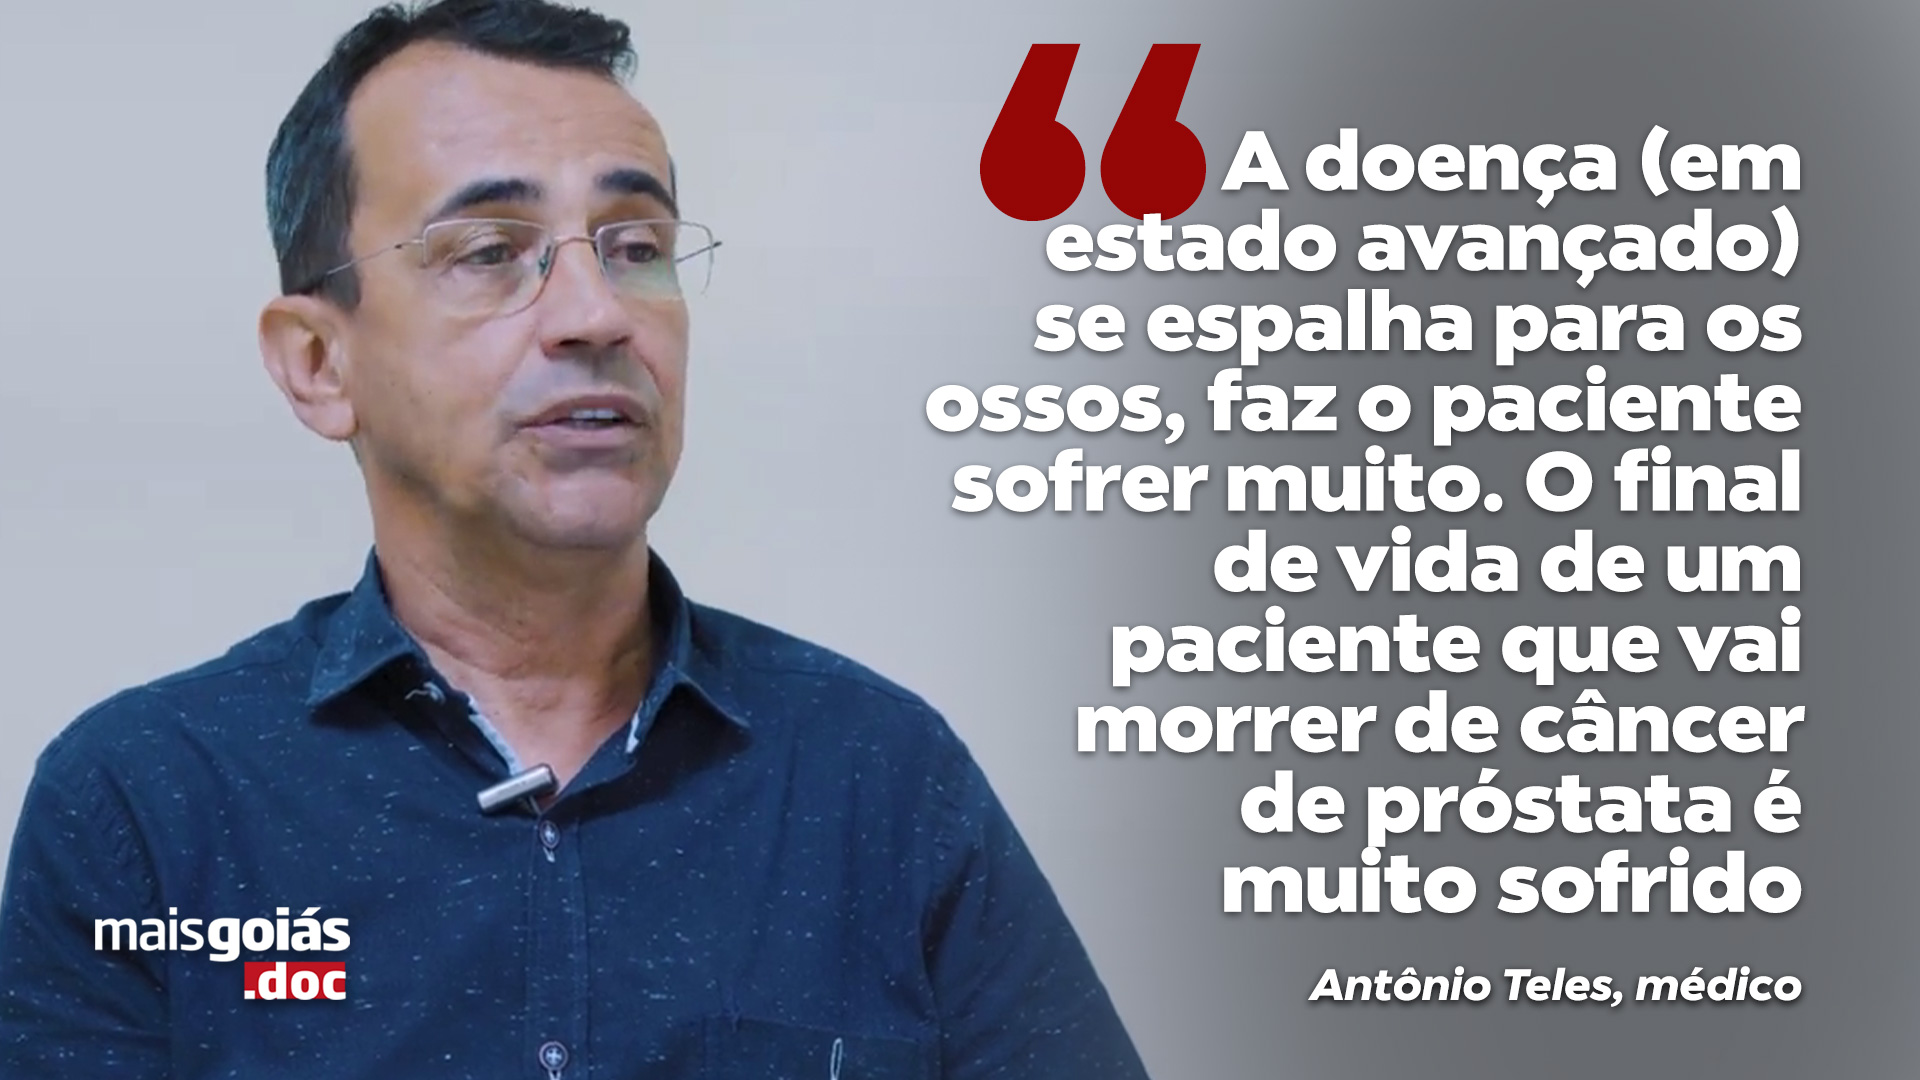 Importância do diagnóstico precoce de câncer de próstata é pauta do Mais Goiás.doc